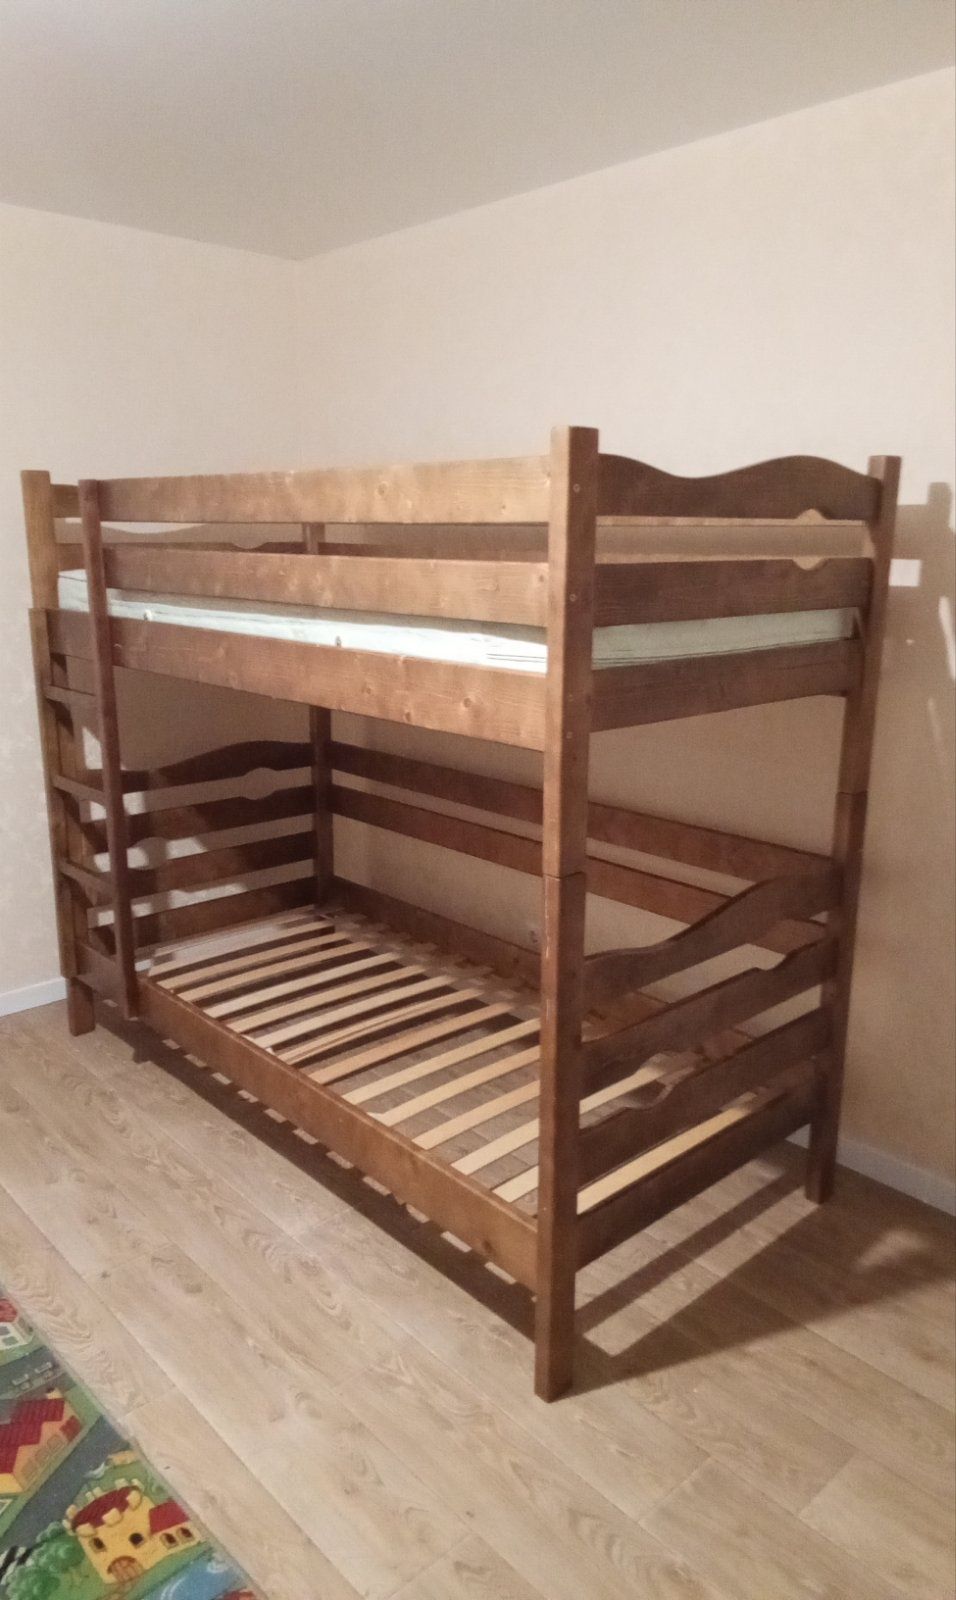 Срочно продам двухъярусную кровать с 1 матрацом. 200×90.